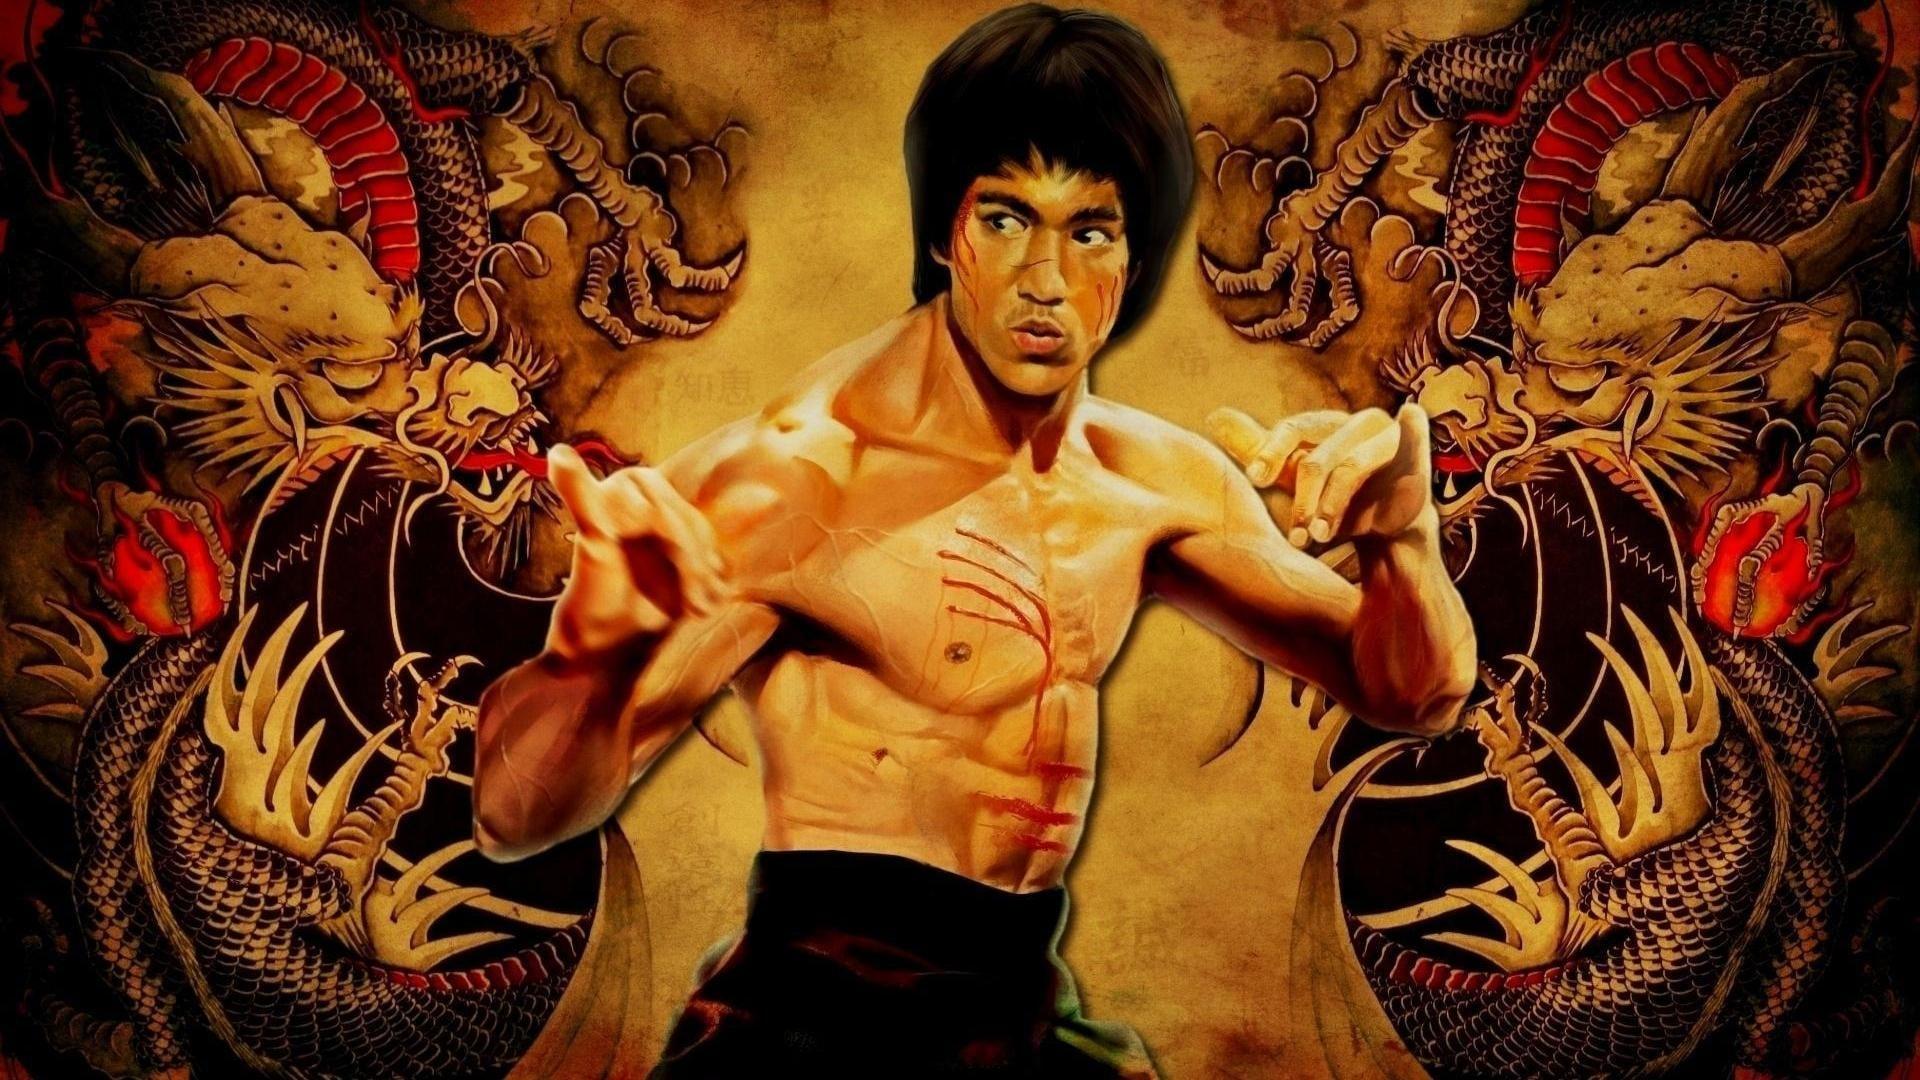 Bruce Lee's Jeet Kune Do backdrop